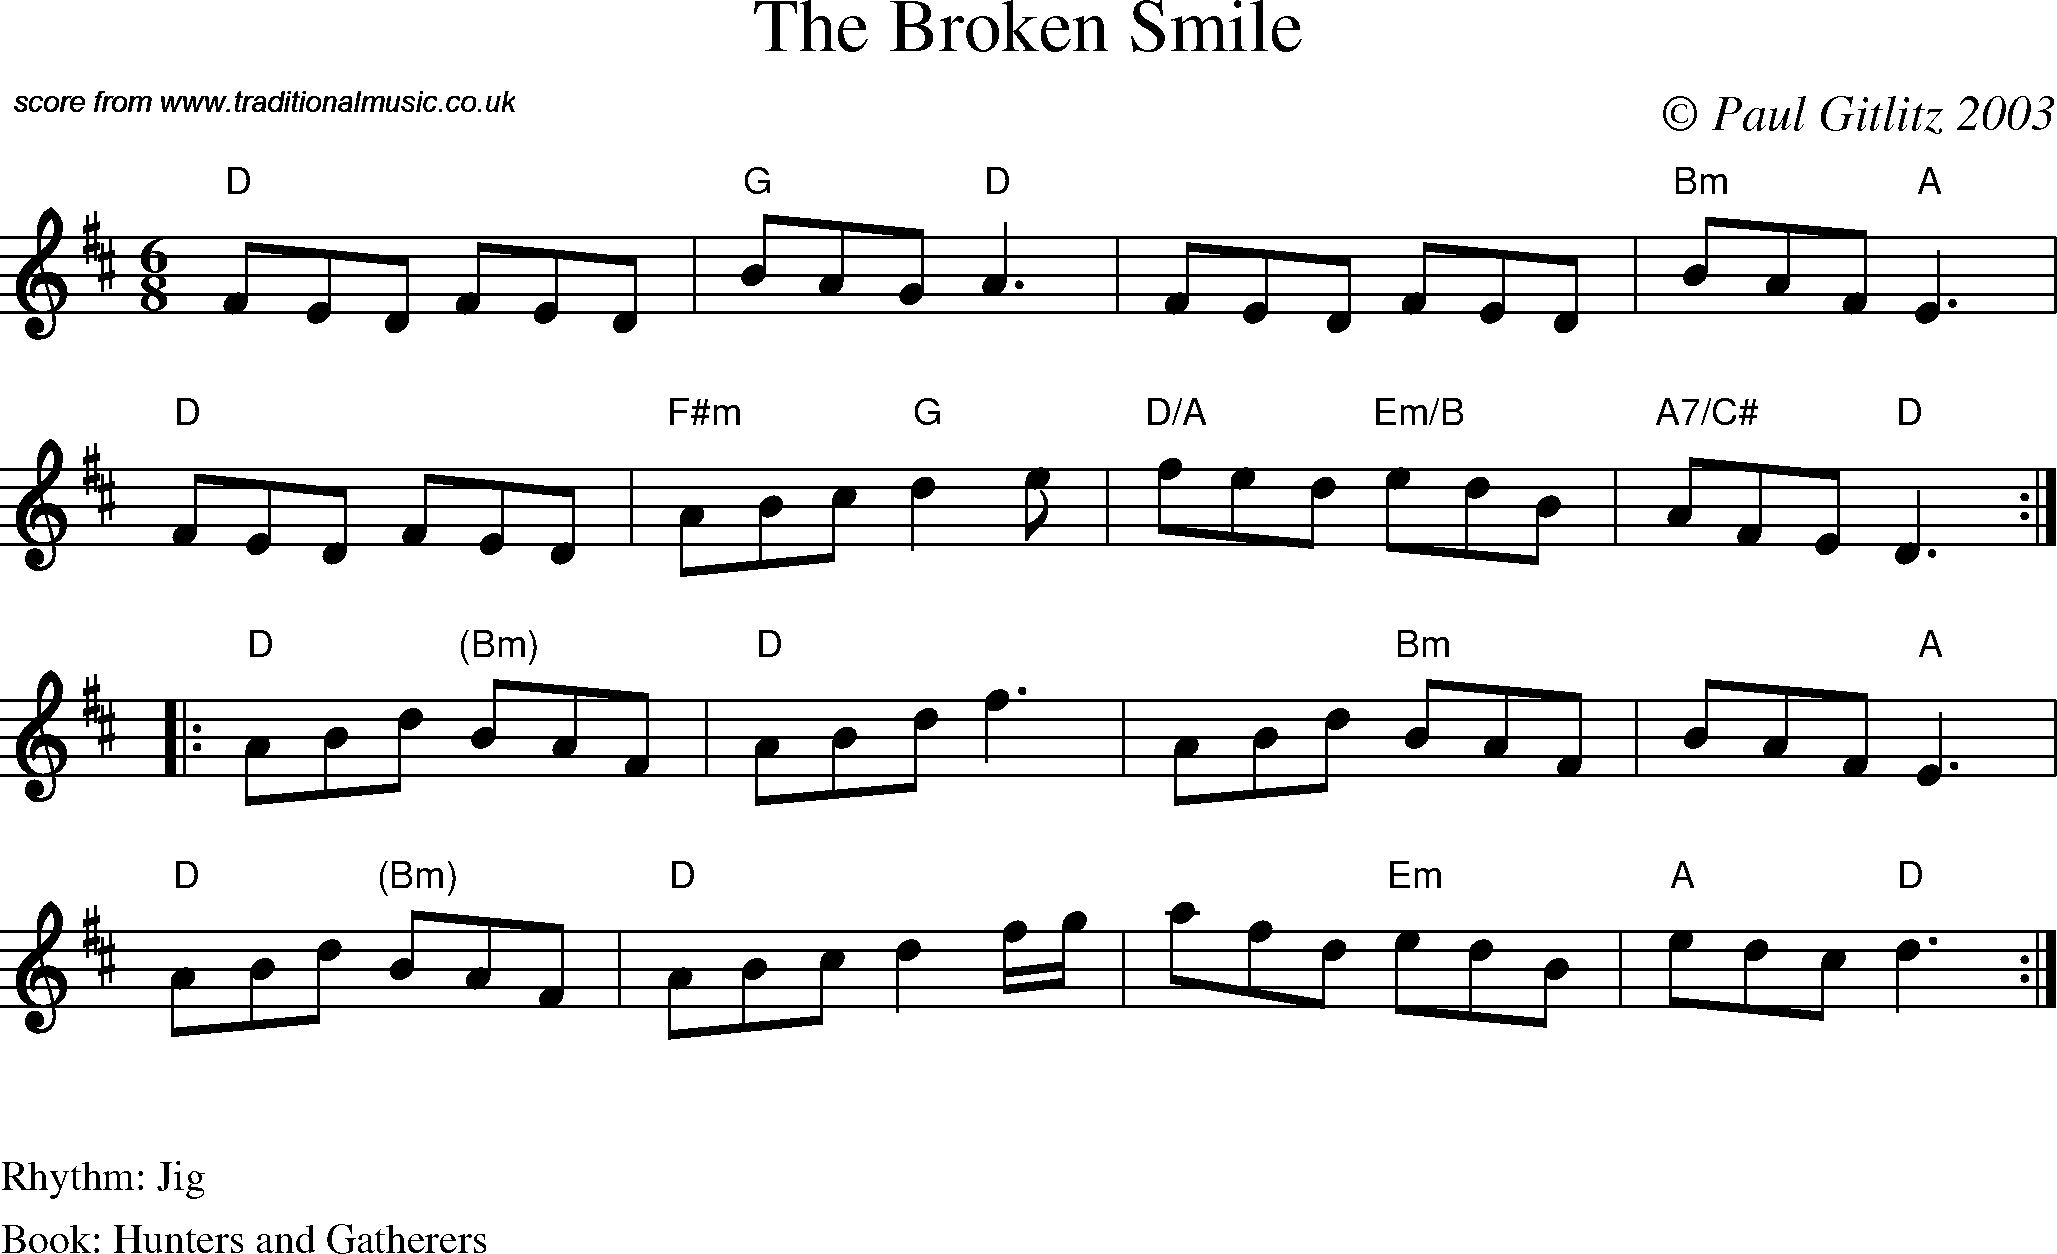 Sheet Music Score for Jig - The Broken Smile